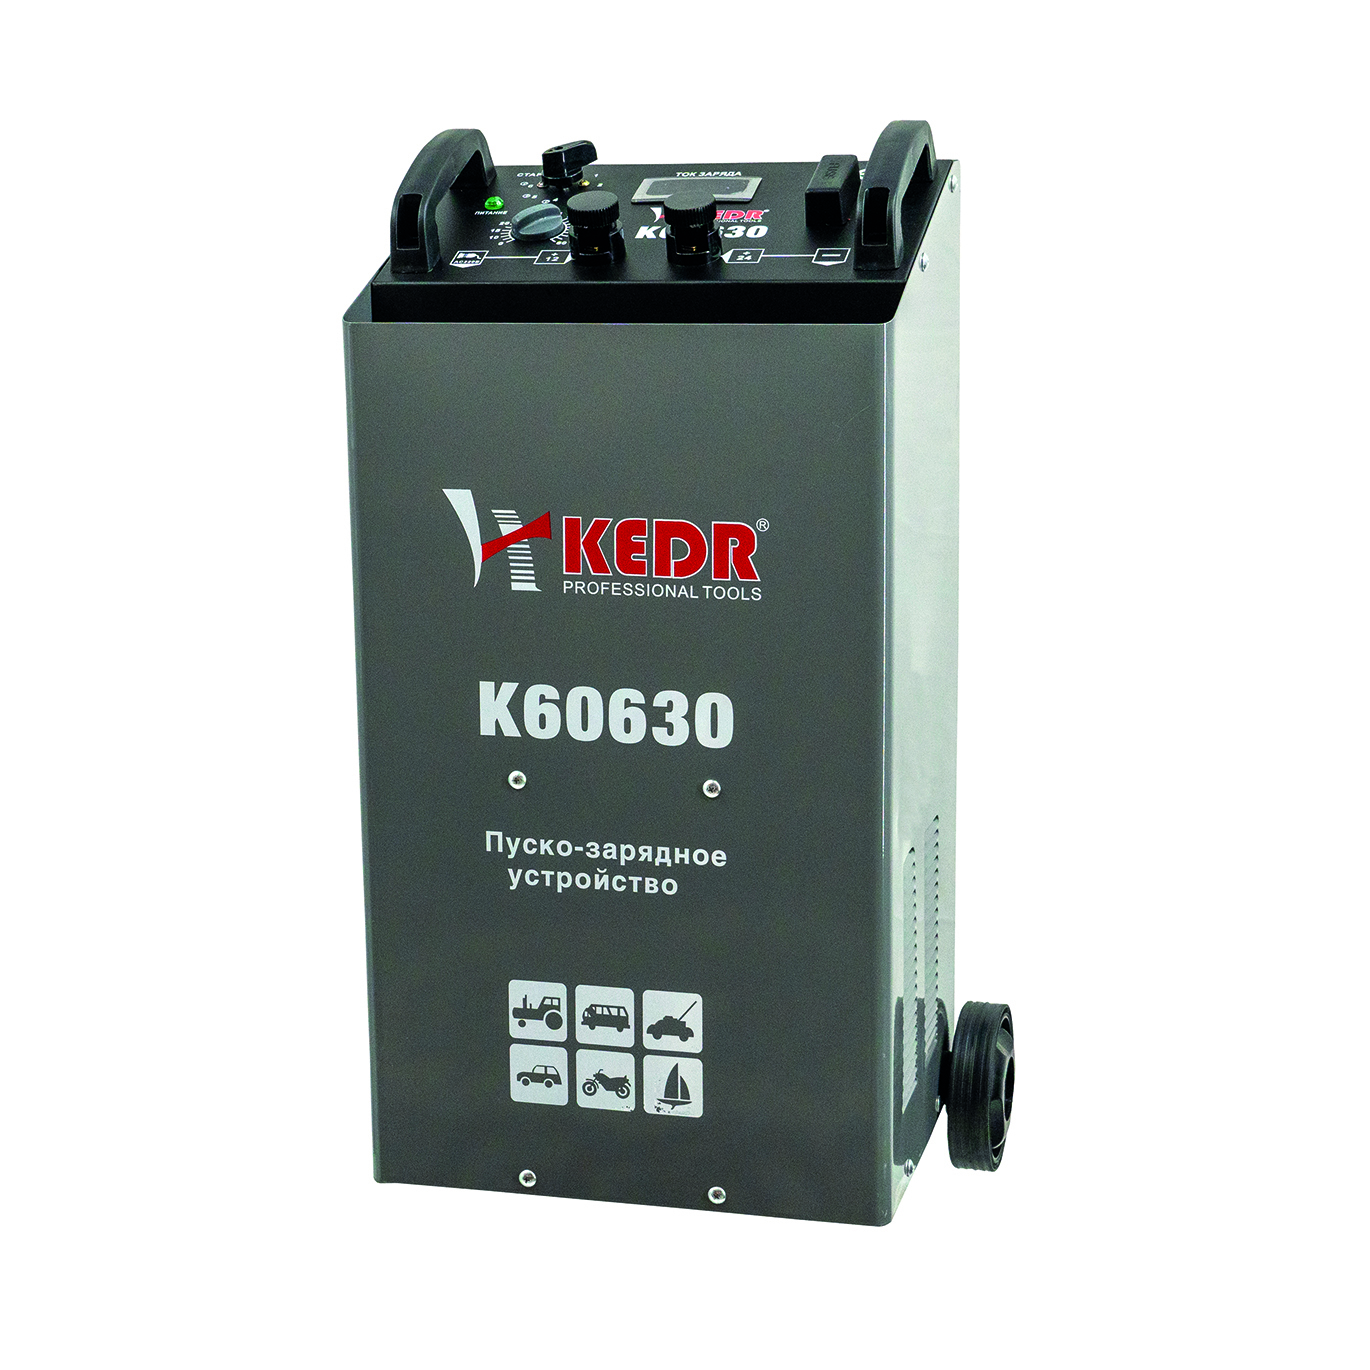 KEDR пуско-зарядное устройство К60630 -  по выгодной цене в .